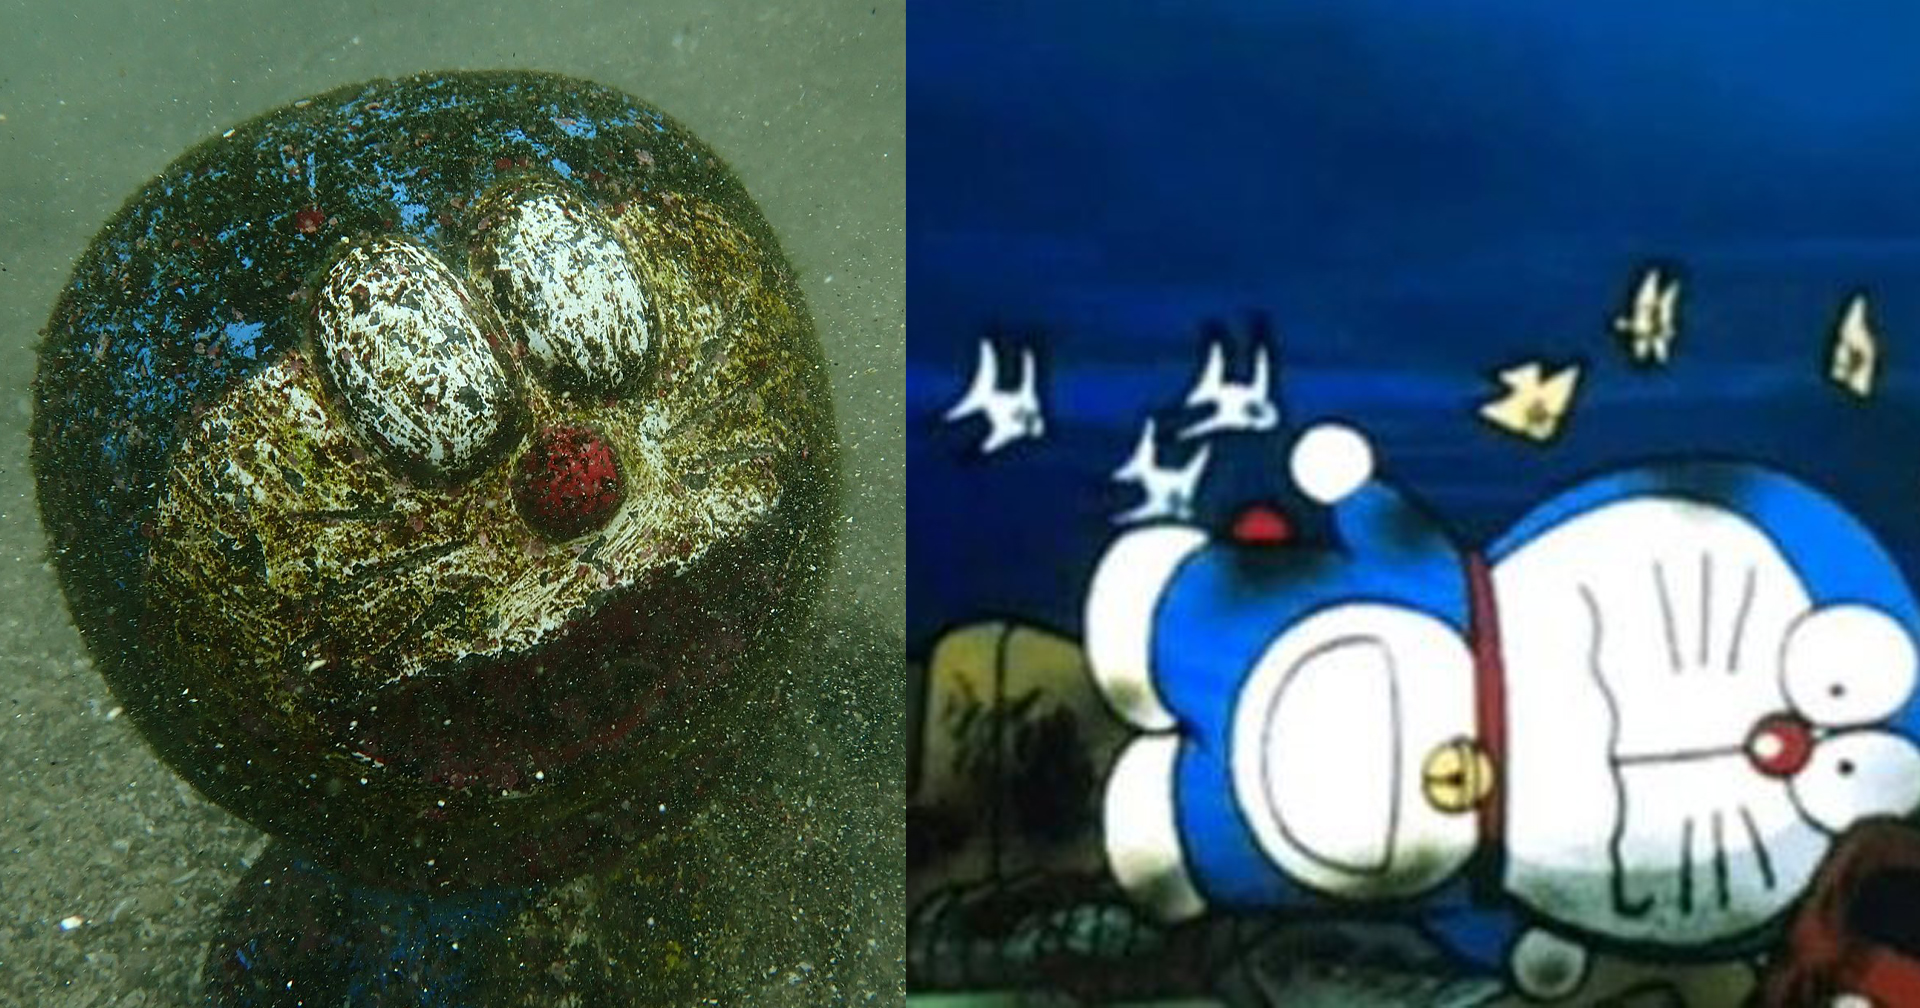 ค้นพบ ‘โดราเอมอน’ จมอยู่ใต้ท้องทะเล คล้ายกับฉากในการ์ตูนปี 1993